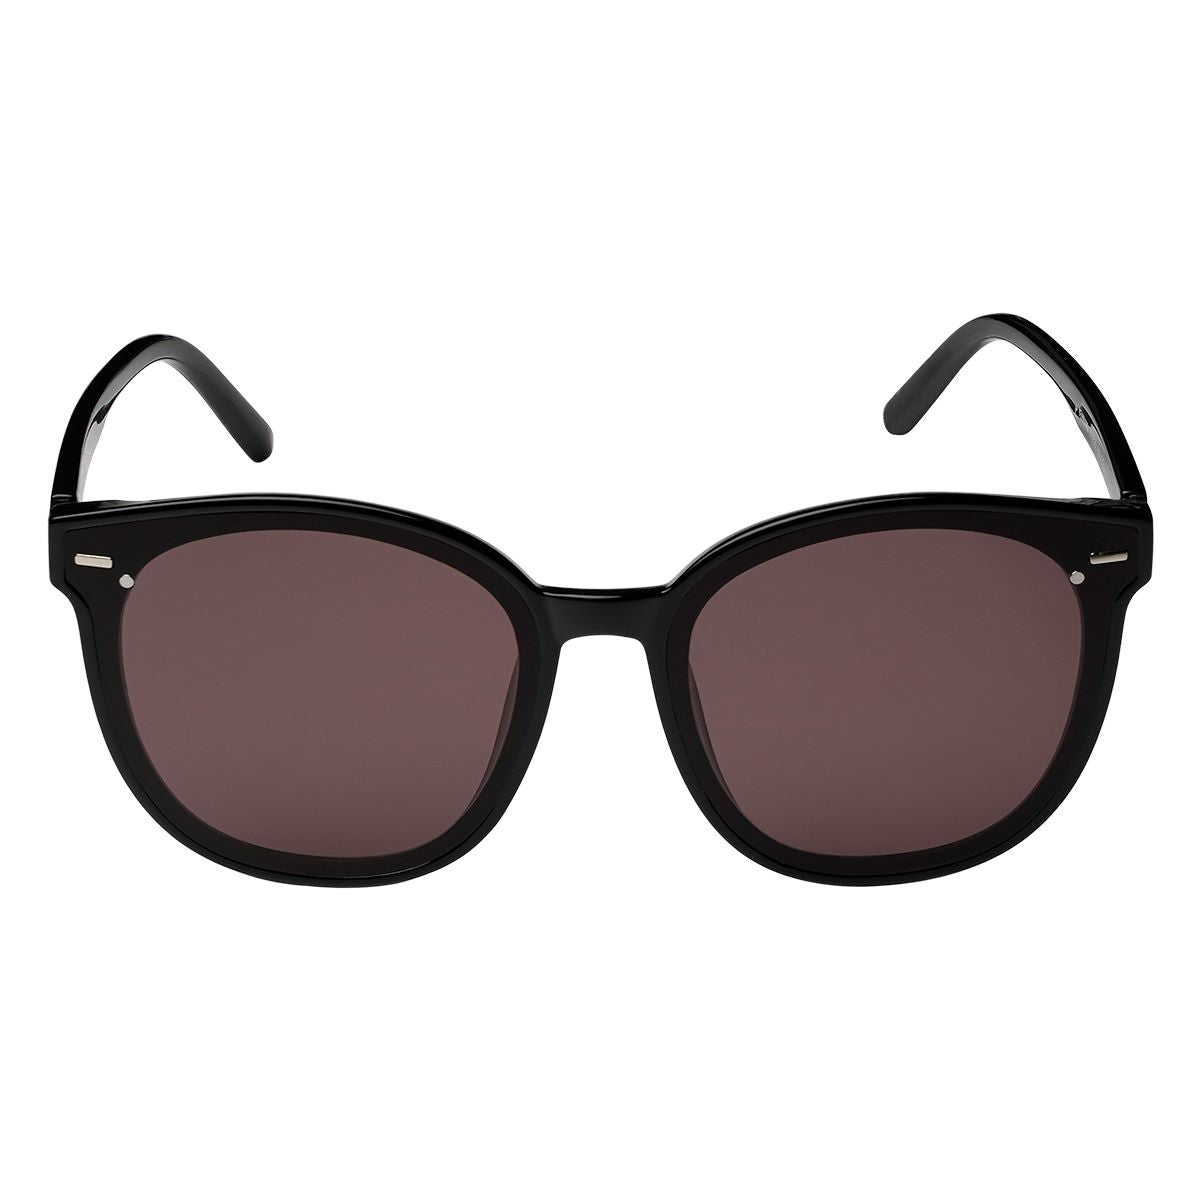 Sunglasses - Pippa